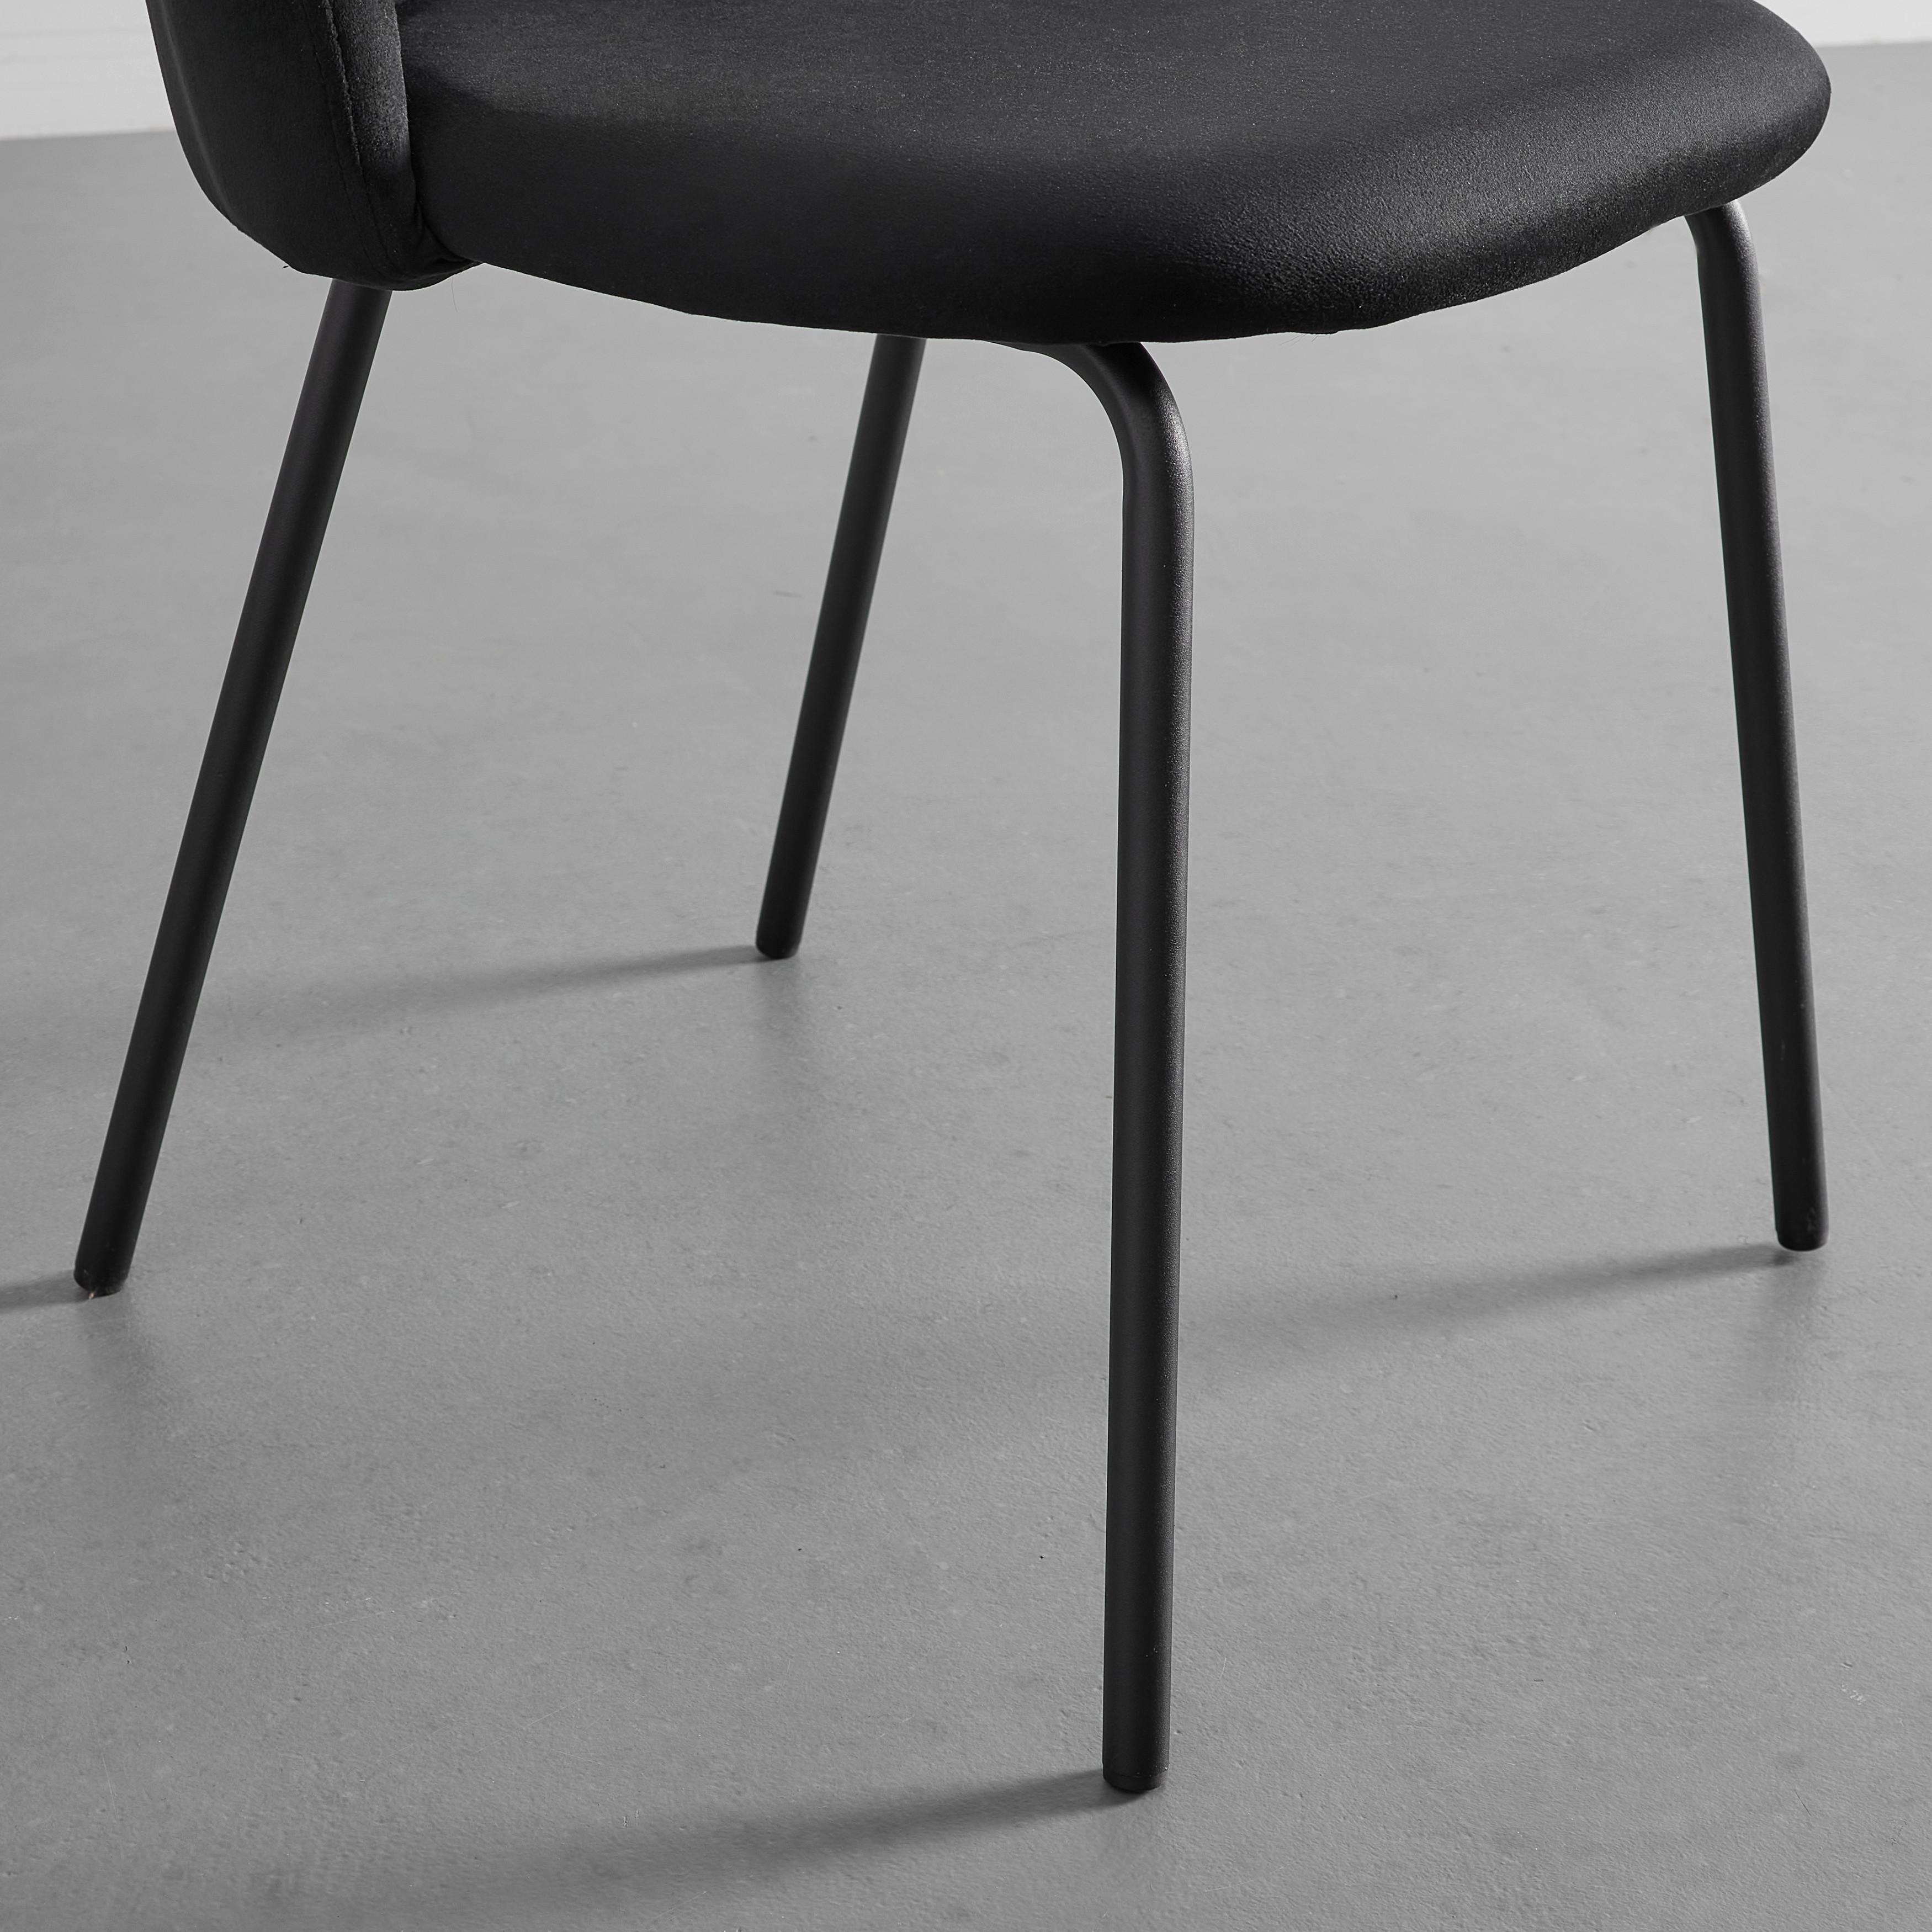 Stuhl "Selina", Samtbezug, schwarz, Gepolstert - Schwarz, MODERN, Textil/Metall (48,5/78/54cm) - Bessagi Home